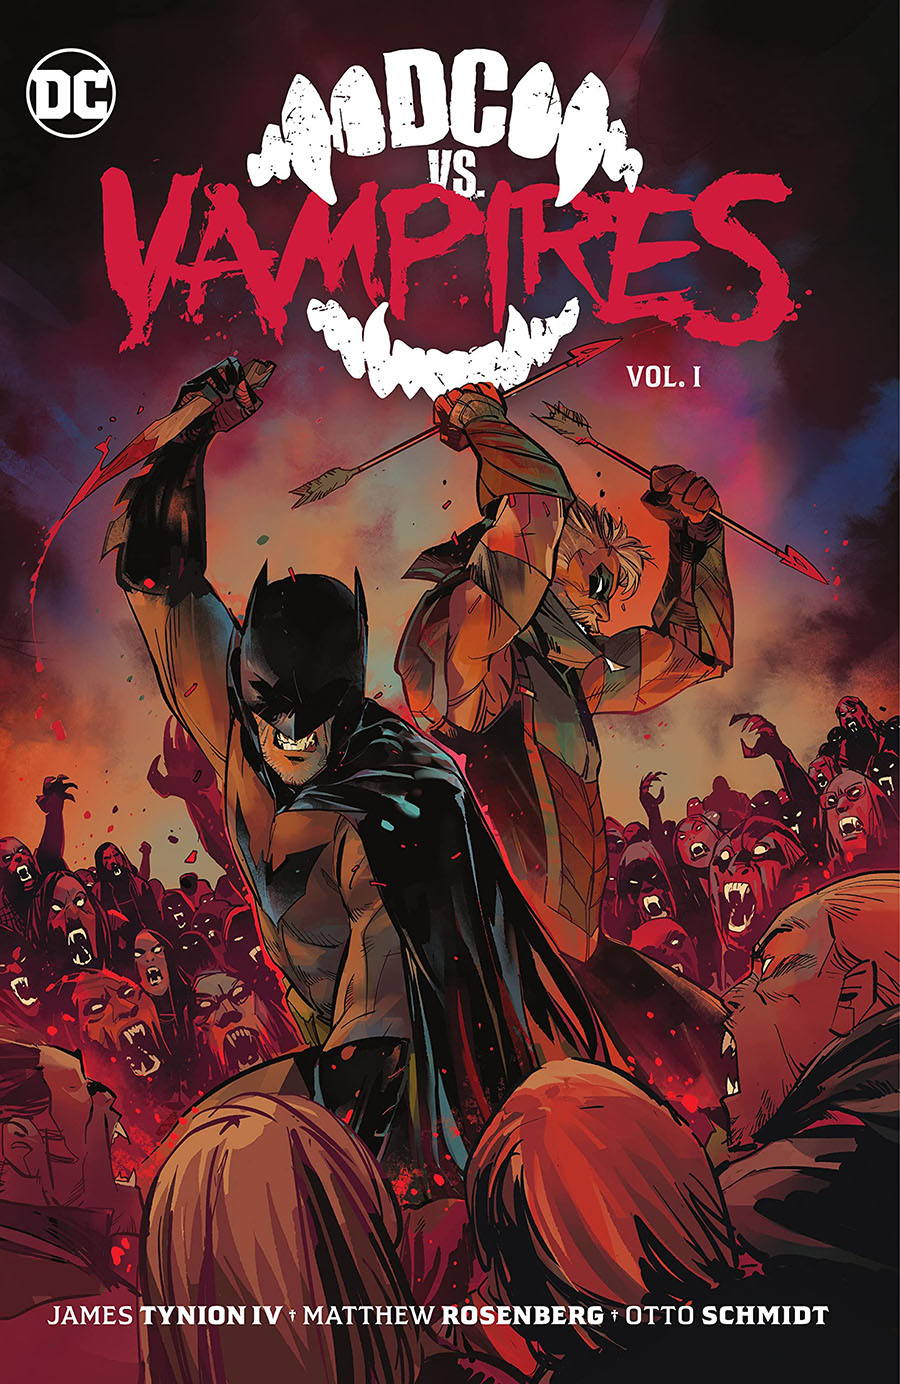 DC vs Vampires Vol 1 HC